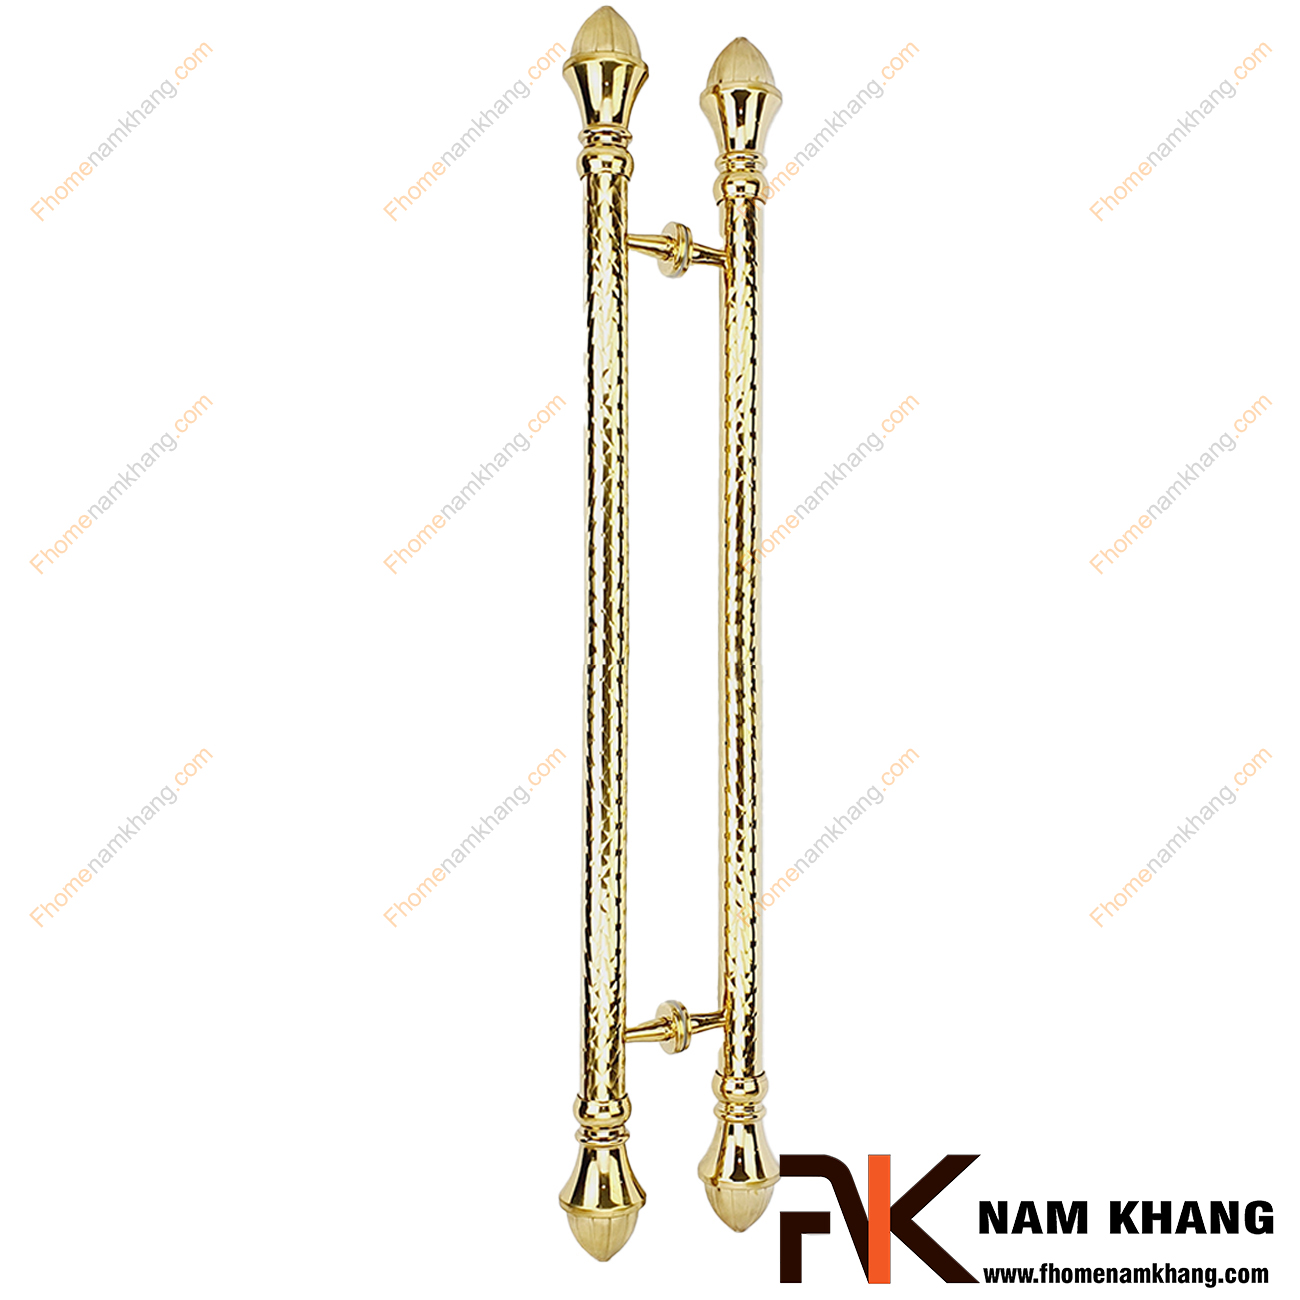 Tay nắm cửa chính cổ điển màu vàng gold NKC015-180XBV được sản xuất từ chất liệu cao cấp, có kích thước lớn chuyên dùng cho cửa gỗ, cửa chính, cửa cổng, cửa 2 hoặc 4 cánh,...